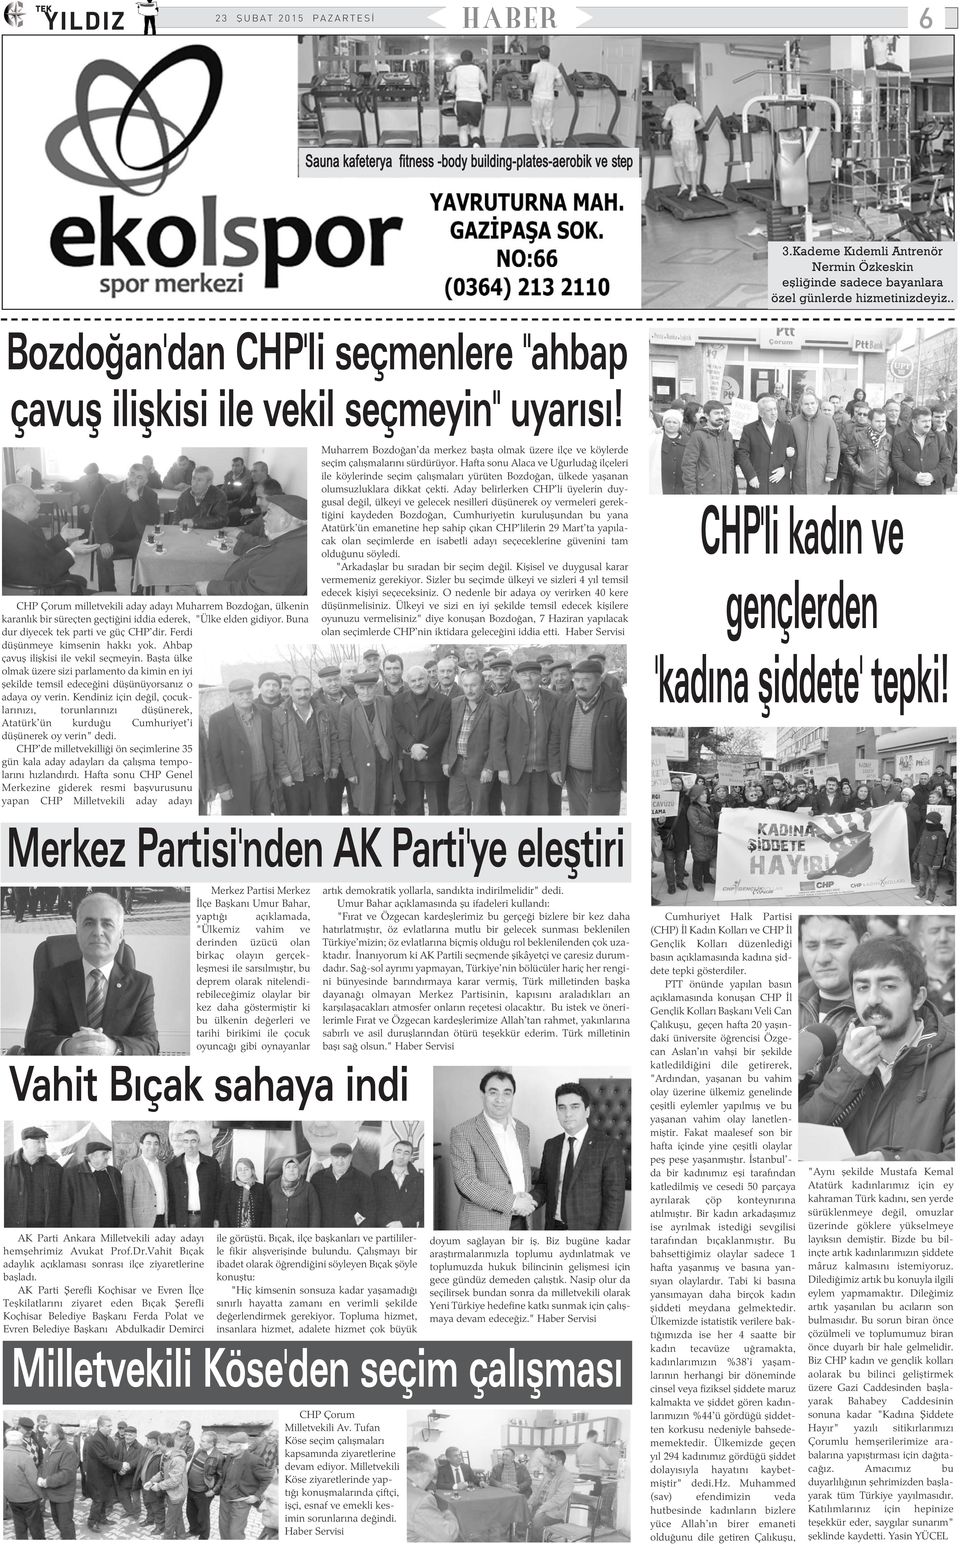 CHP Çorum milletvekili aday adayý Muharrem Bozdoðan, ülkenin karanlýk bir süreçten geçtiðini iddia ederek, "Ülke elden gidiyor. Buna dur diyecek tek parti ve güç CHP'dir.